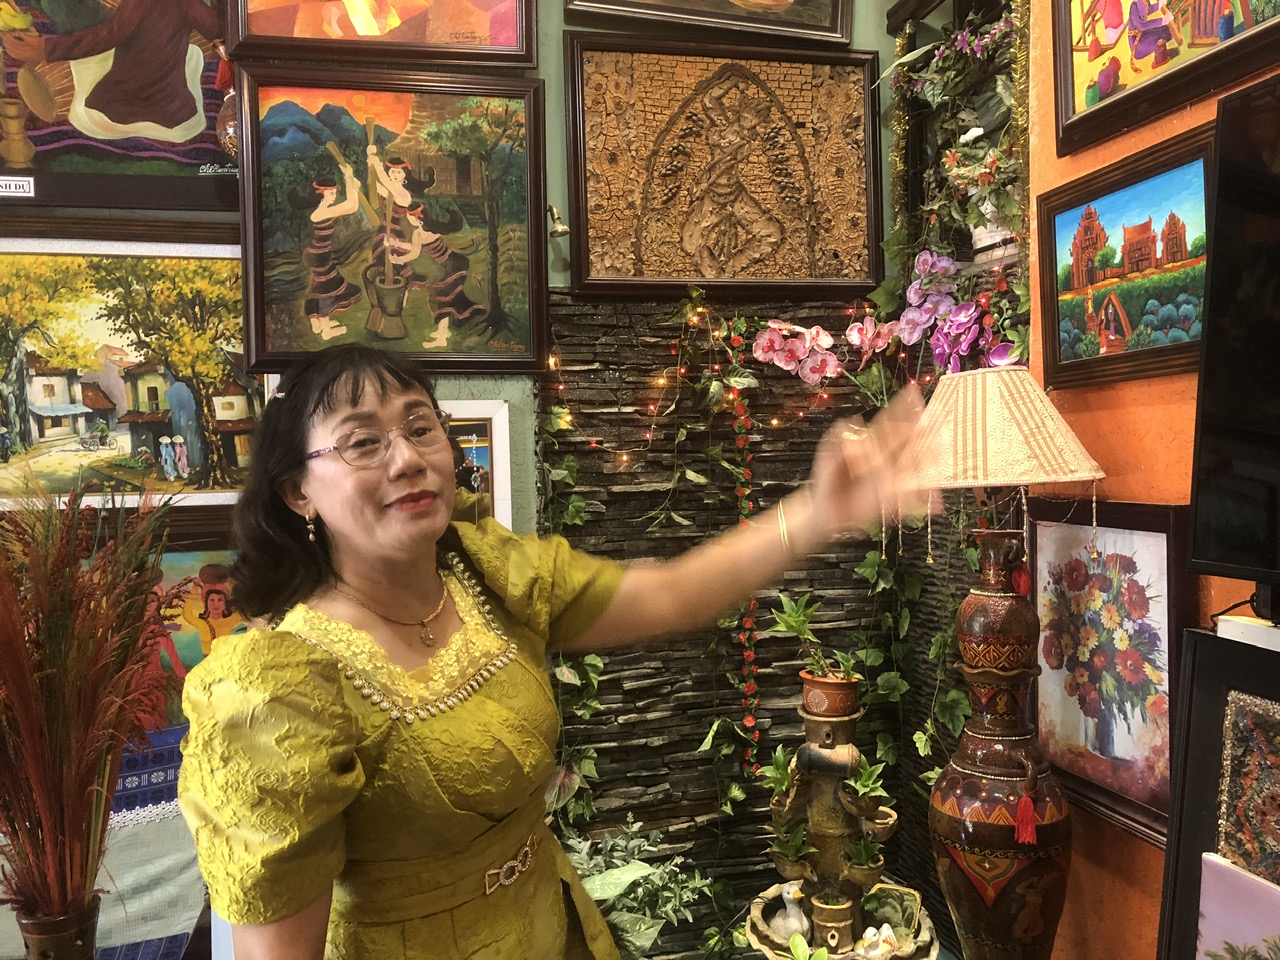 Nữ thạc sỹ, họa sĩ Chế Kim Trung, người thổi hồn Chăm cho từng tác phẩm nghệ thuật - Ảnh 4.